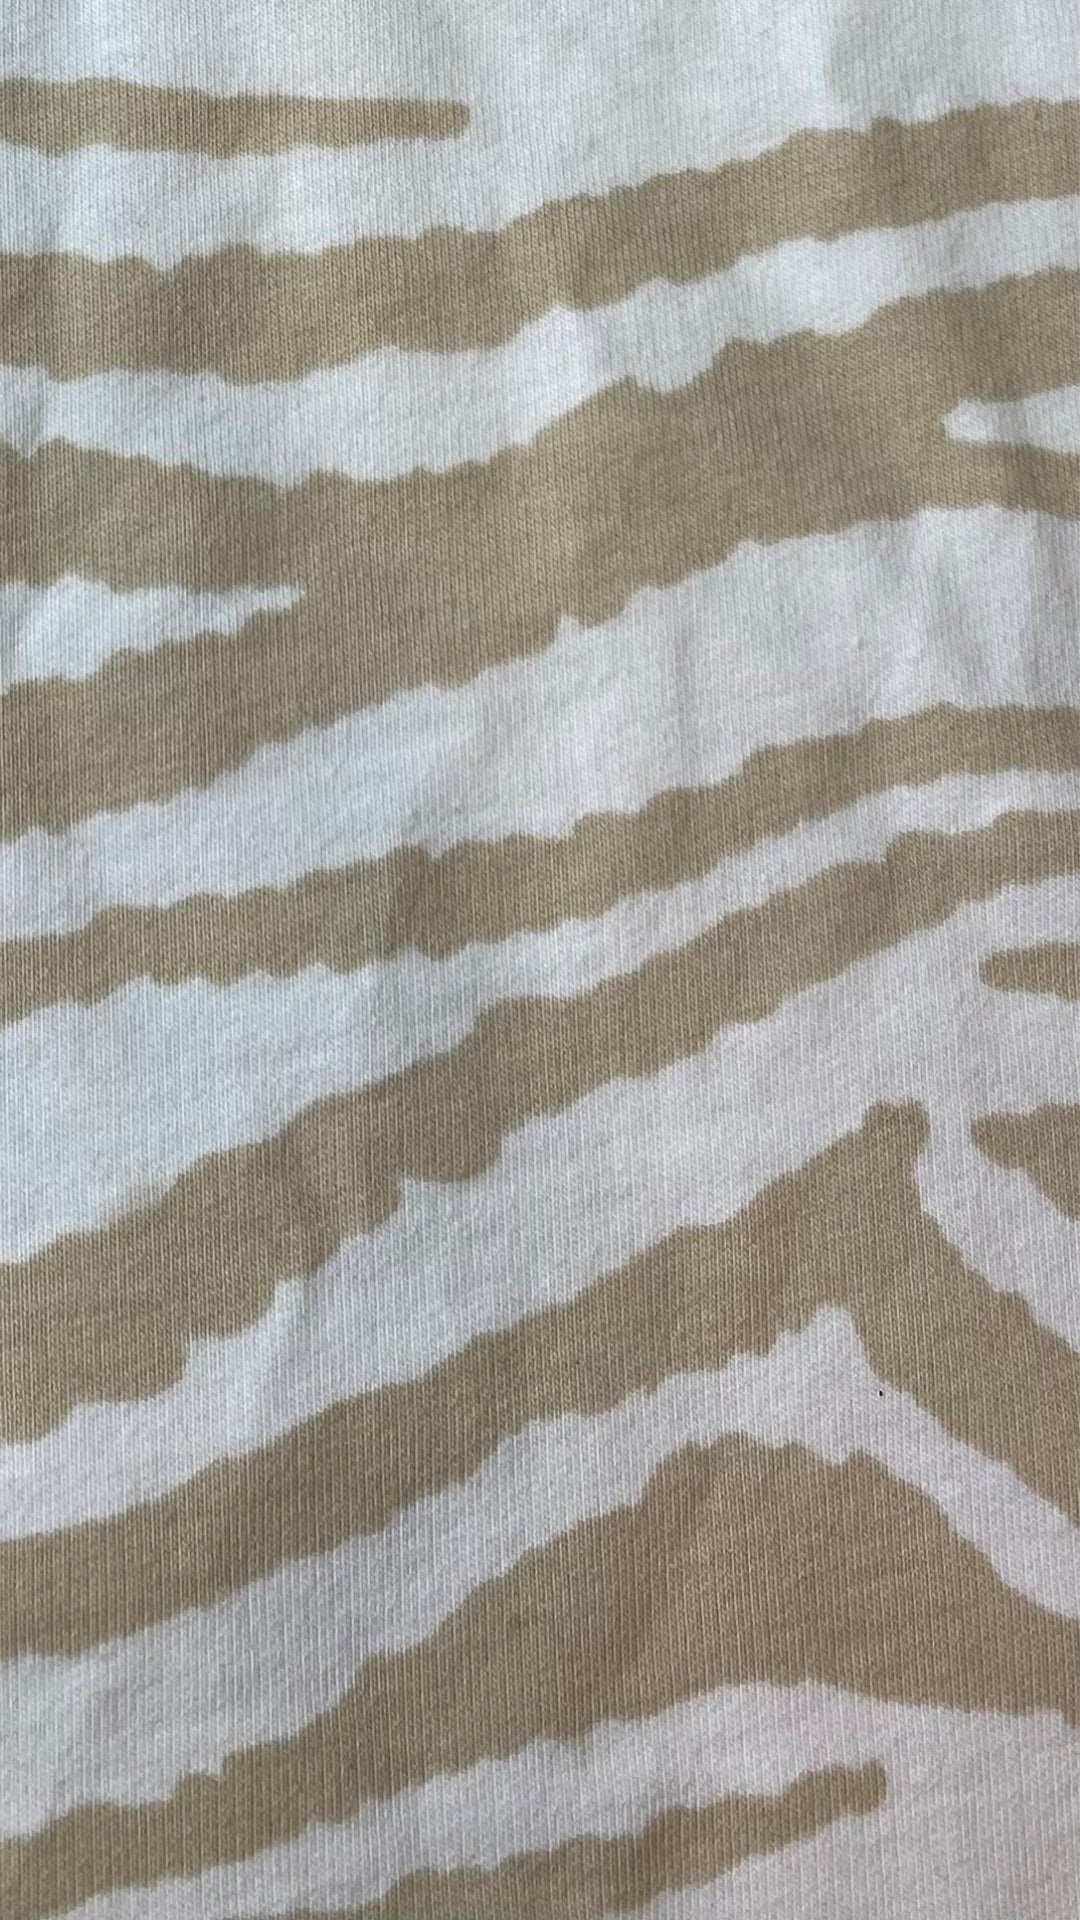 Chandail zébrures sable en french terry Monari, taille 38 (8/medium). Vue de près du tissu.